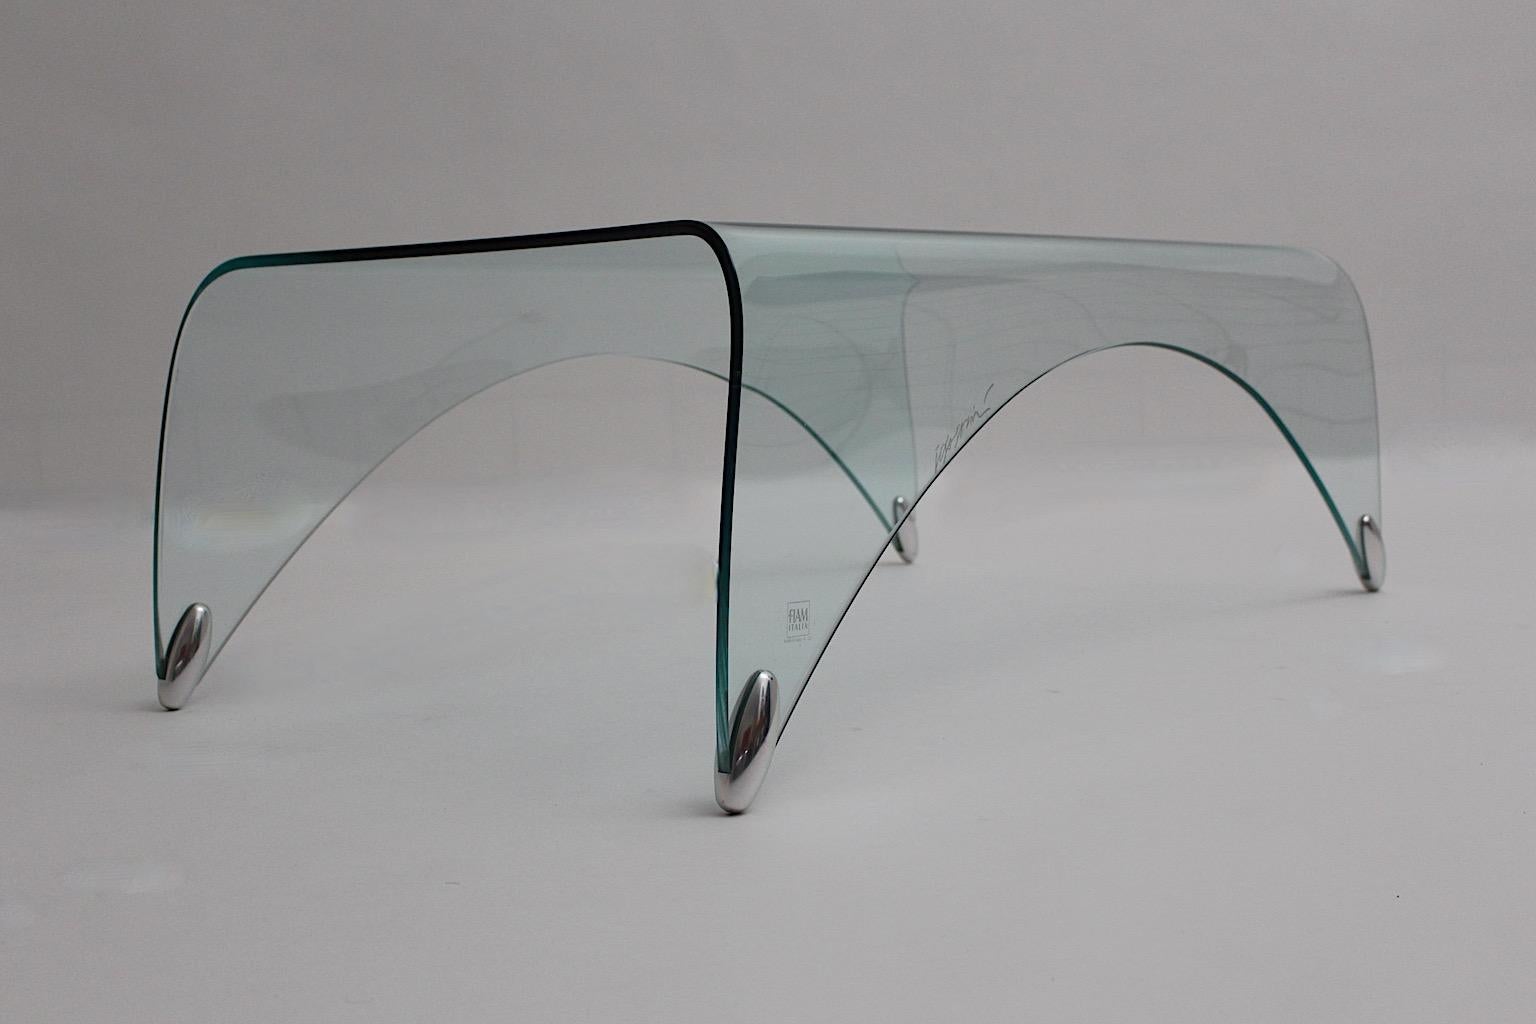 Table de canapé ou table basse moderne Vintage, modèle Genio, en verre de sécurité transparent avec détails en métal, par Massimo Iosa Ghini pour FIAM Italie, fin du 20ème siècle.
Cette magnifique table de canapé présente une forme légèrement